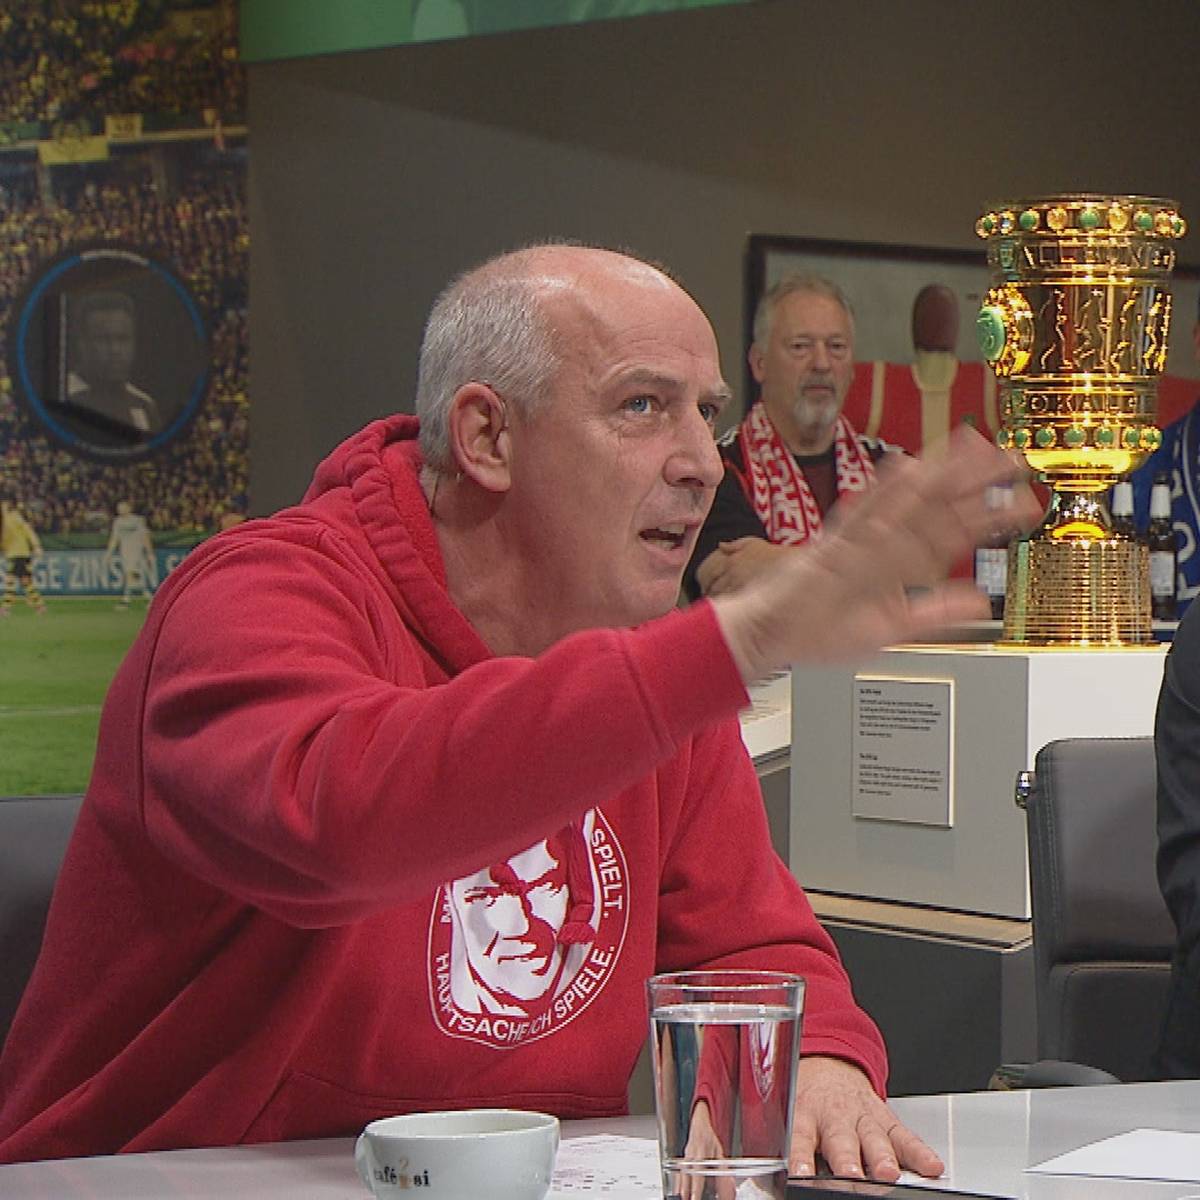 "DFB-Pokal interessiert keinen!" Basler redet sich in Rage